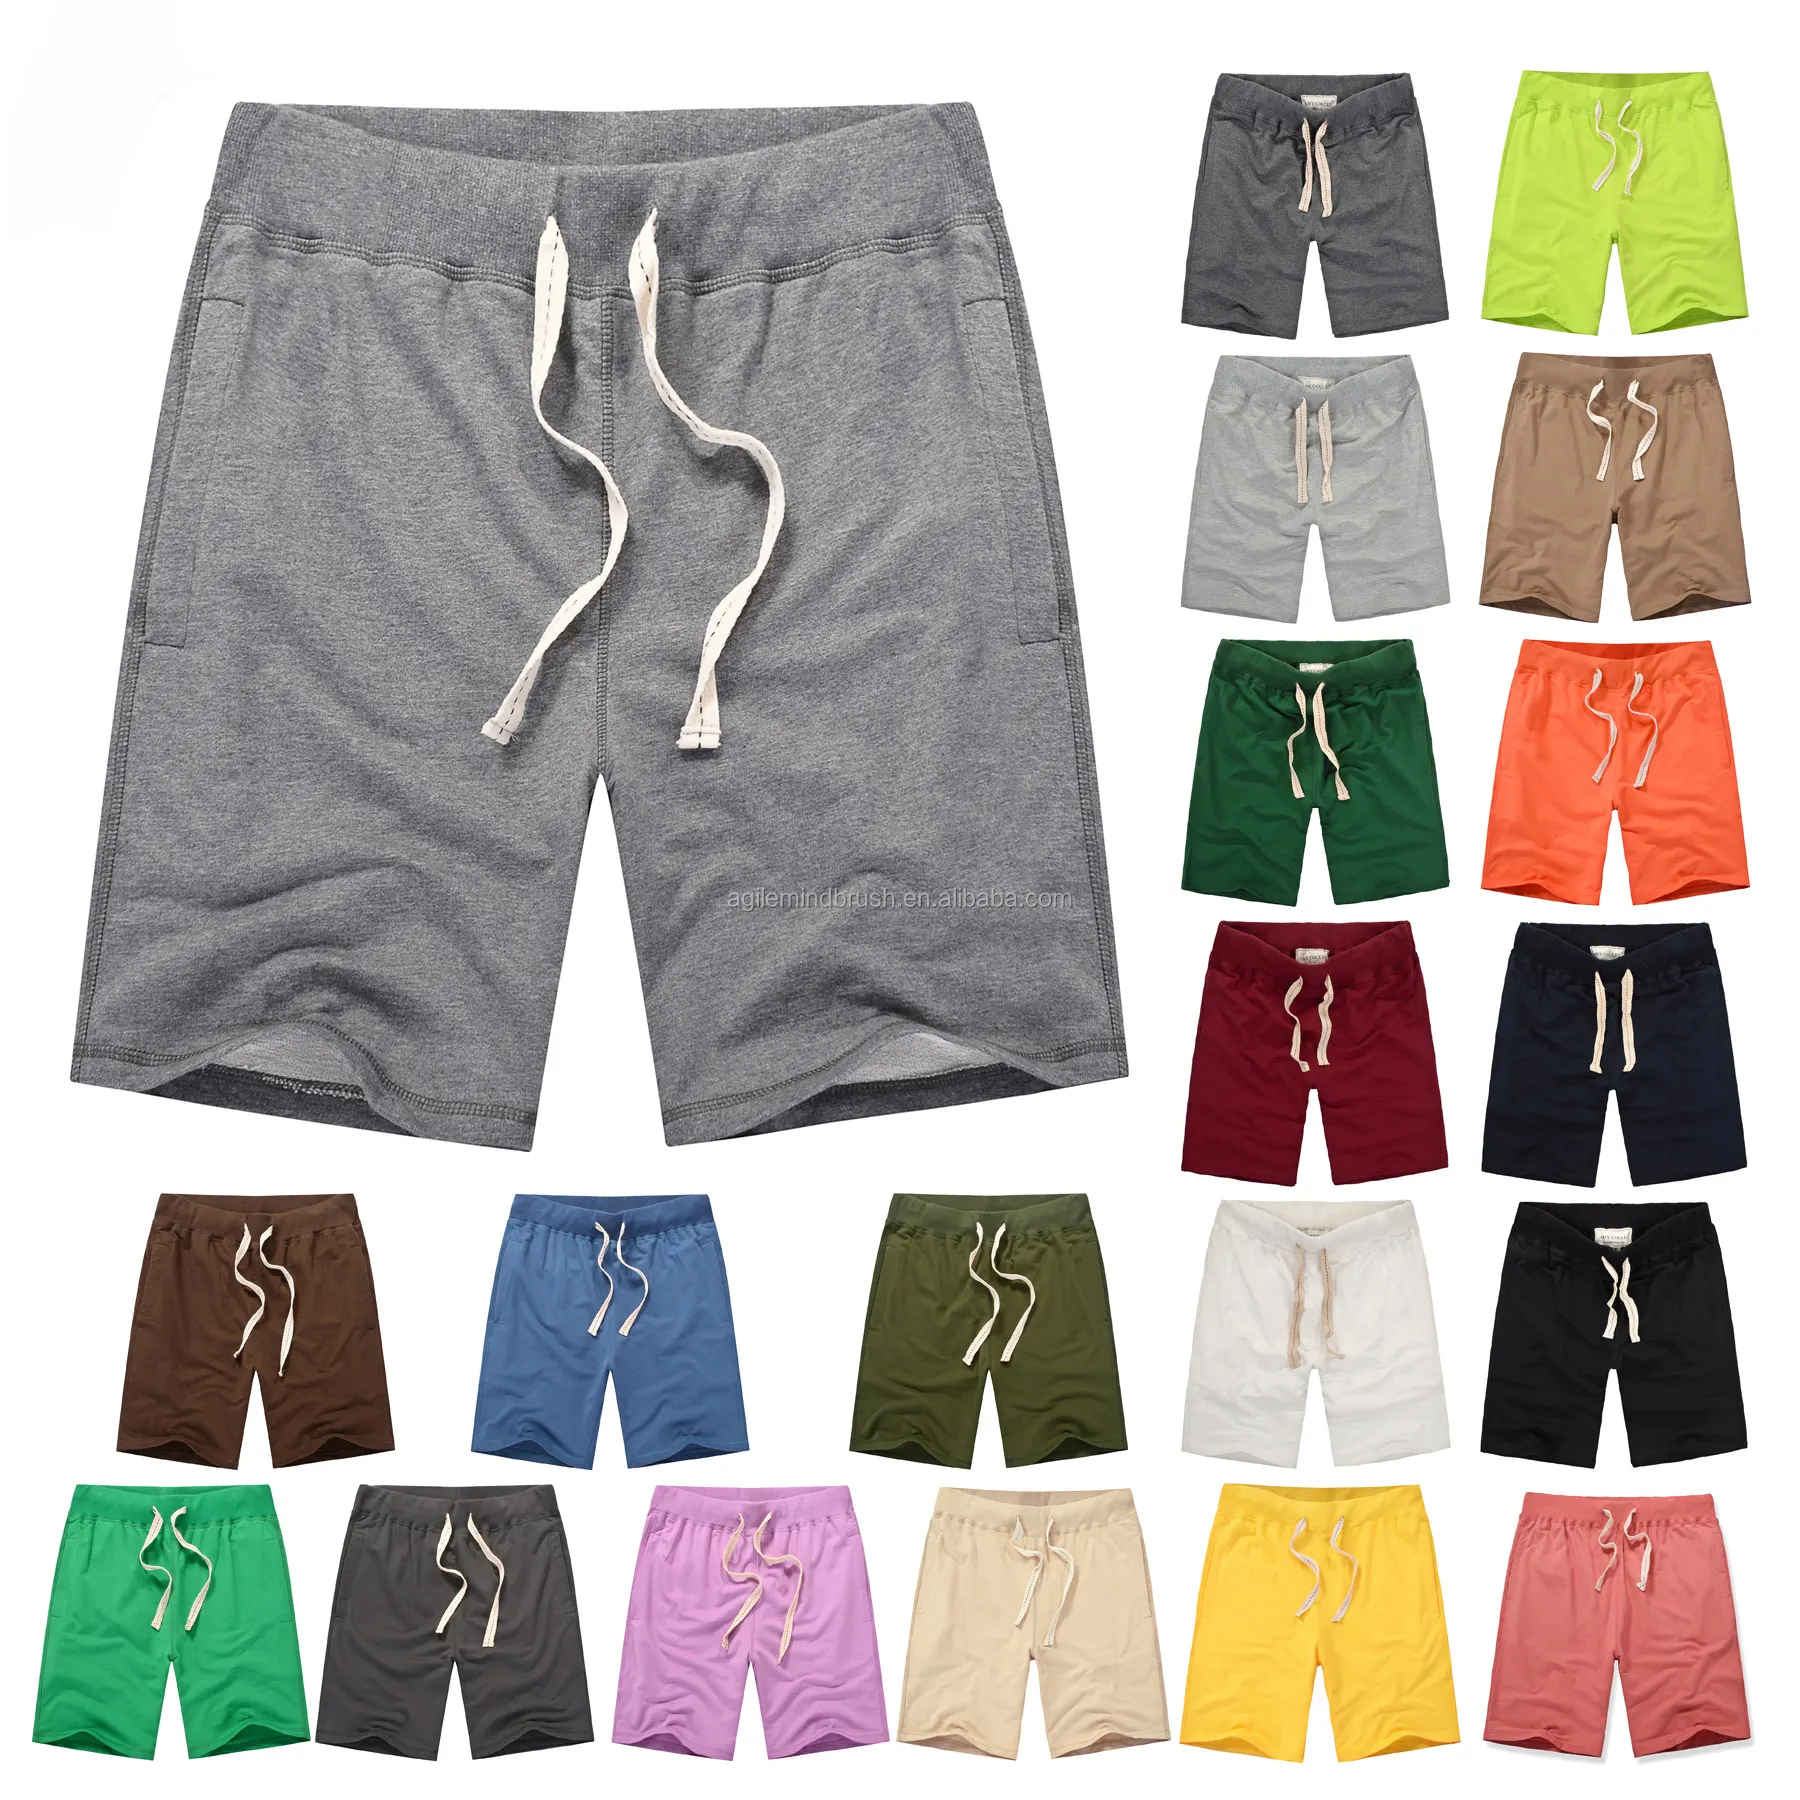 Pantalones cortos de mezcla de algodón de alta calidad para hombre, Shorts para correr, gimnasio, deporte, Surf, tabla de playa, personalizado, 20 colores, venta al por mayor